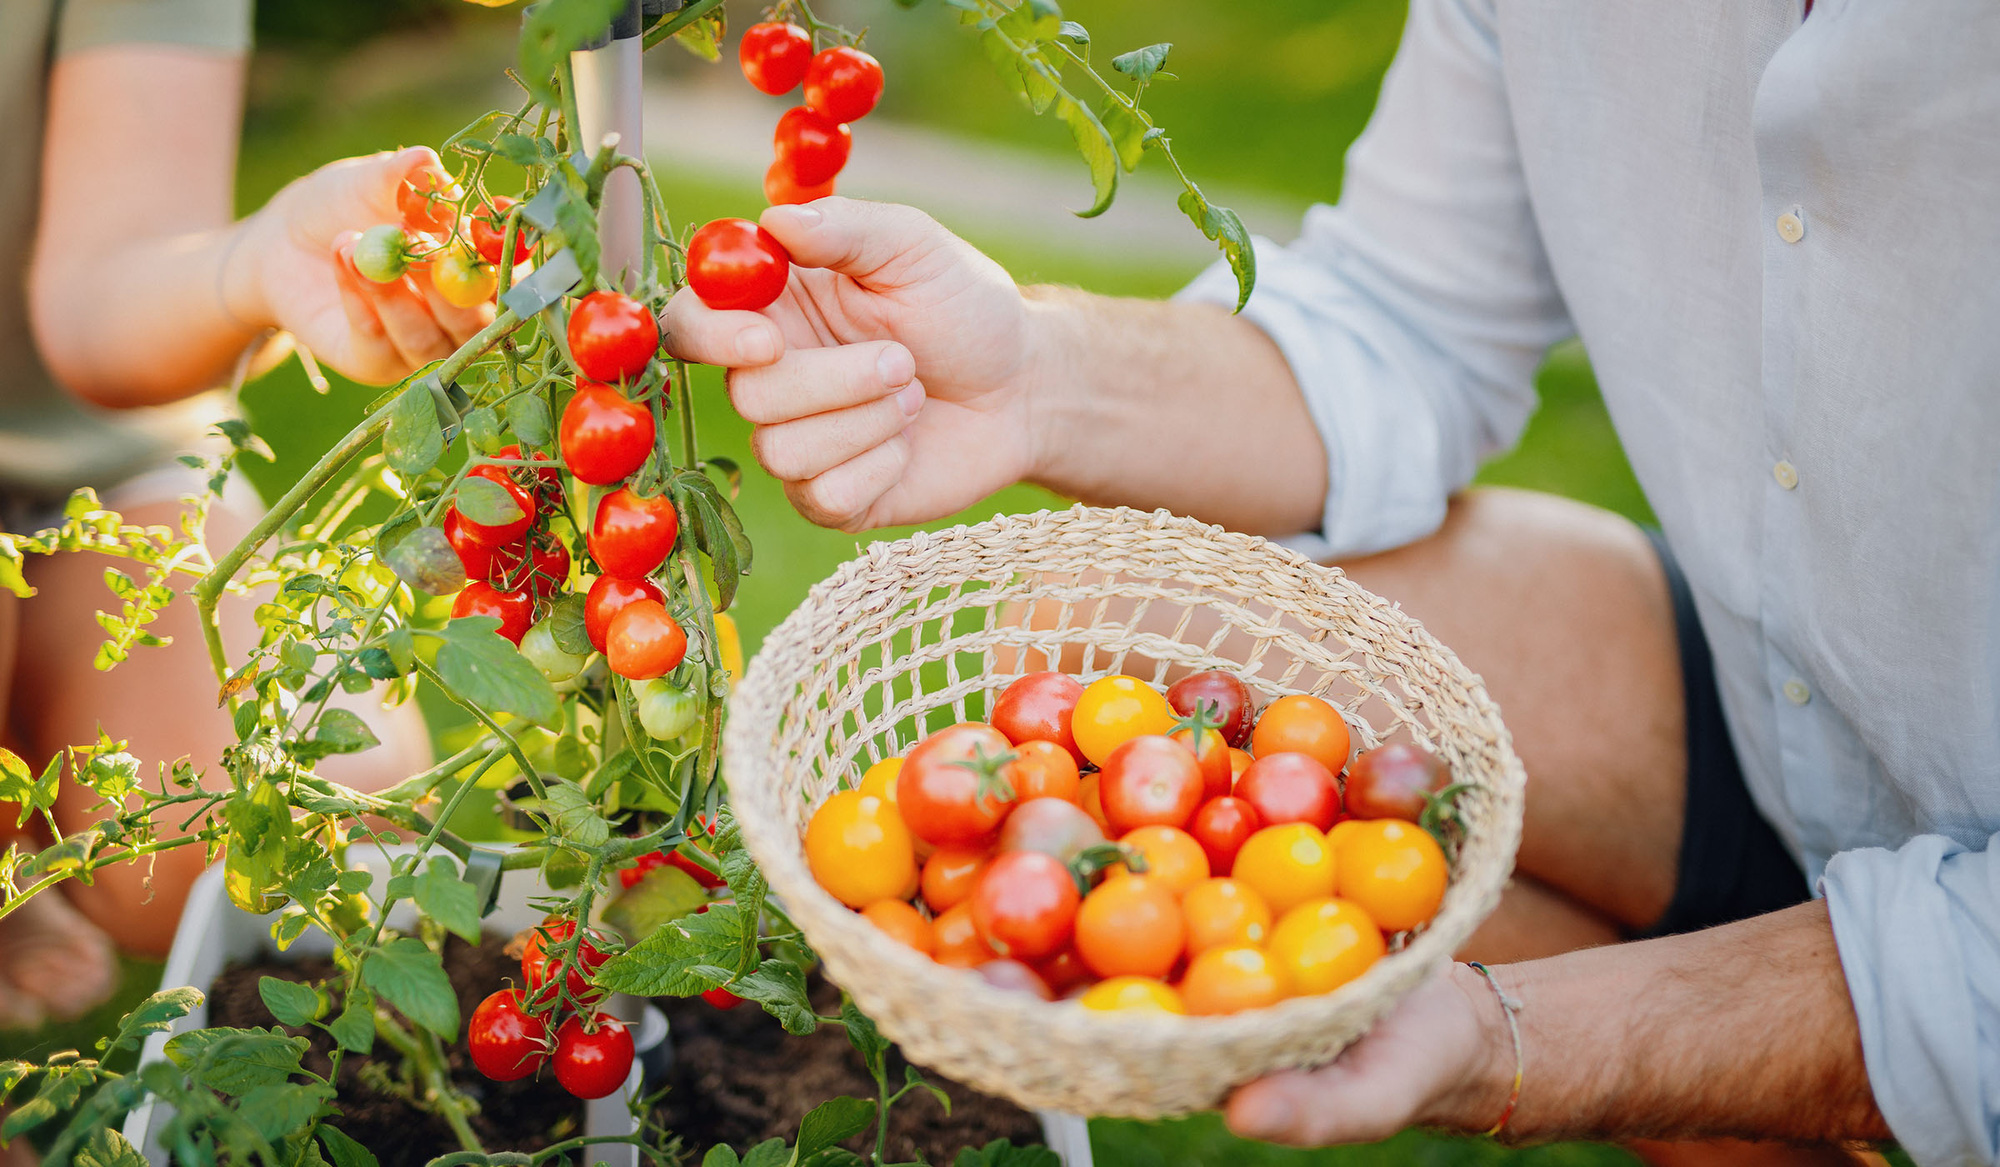 Những sai lầm khi trồng cà chua bạn nên biết khi bắt đầu làm vườn - Ảnh 1.